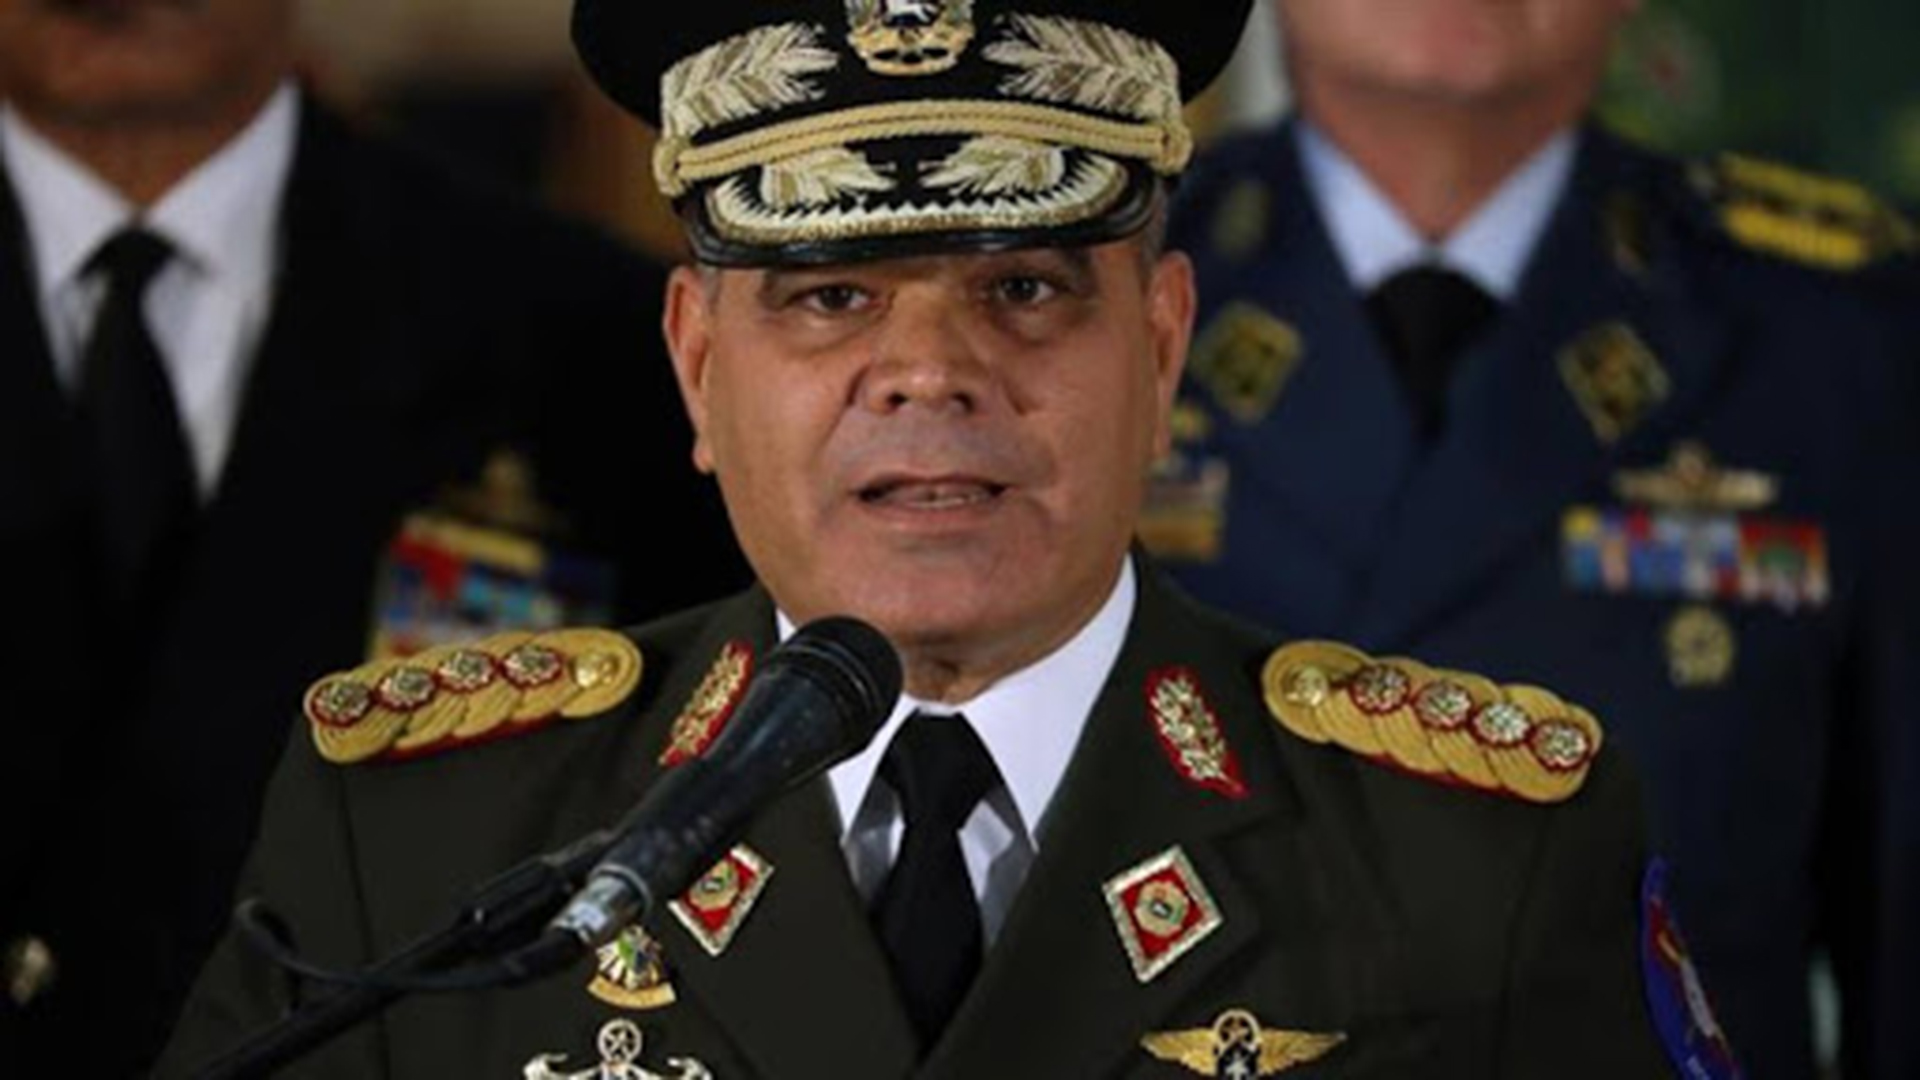 El jefe del Ejército de Venezuela ordenó el despido de 302 oficiales sin juicio previo